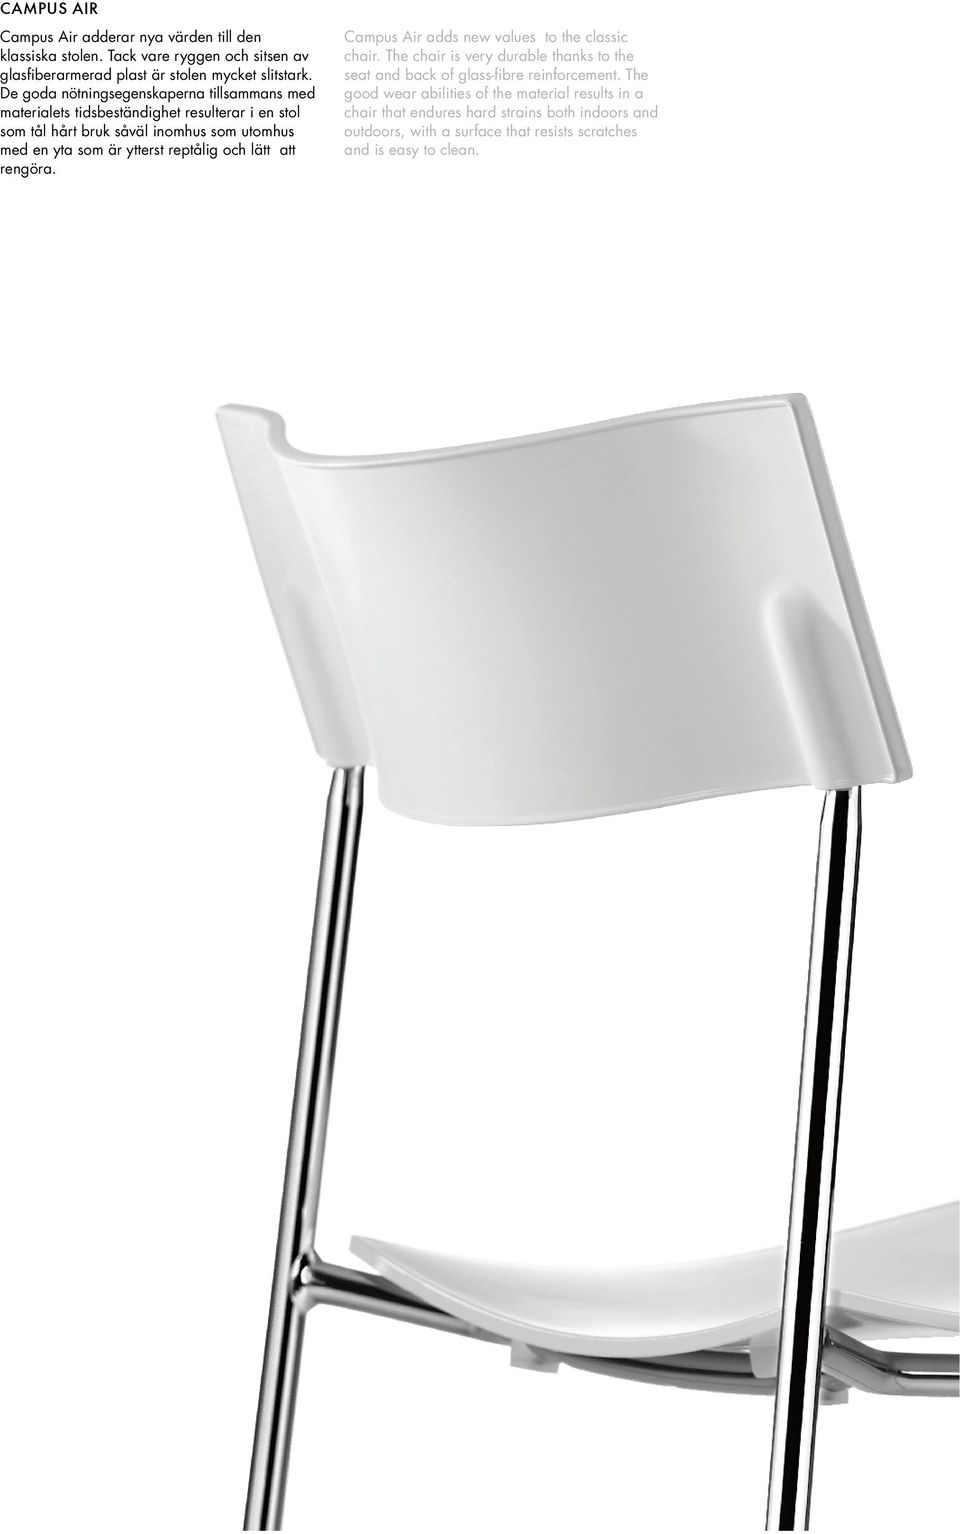 ytterst reptålig och lätt att rengöra. pus Air adds new values to the classic chair.